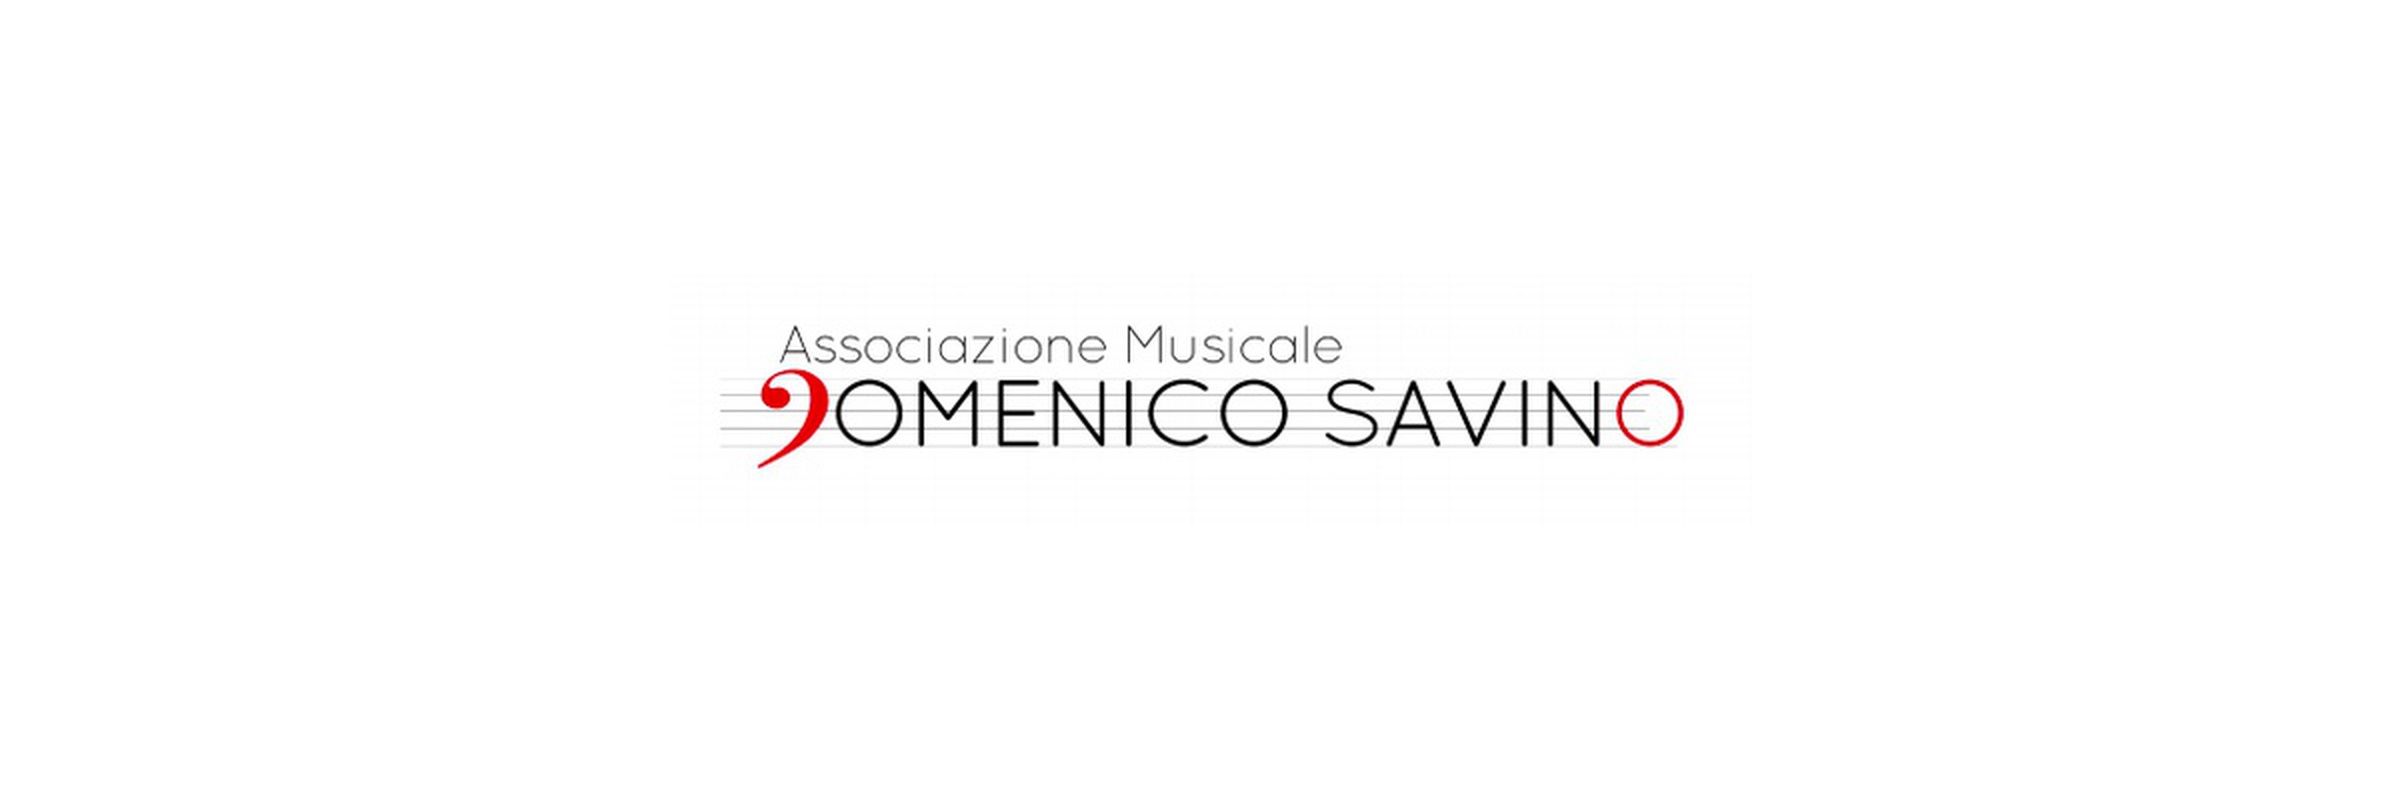 Musical Association Domenico Savino - Trio Prata 